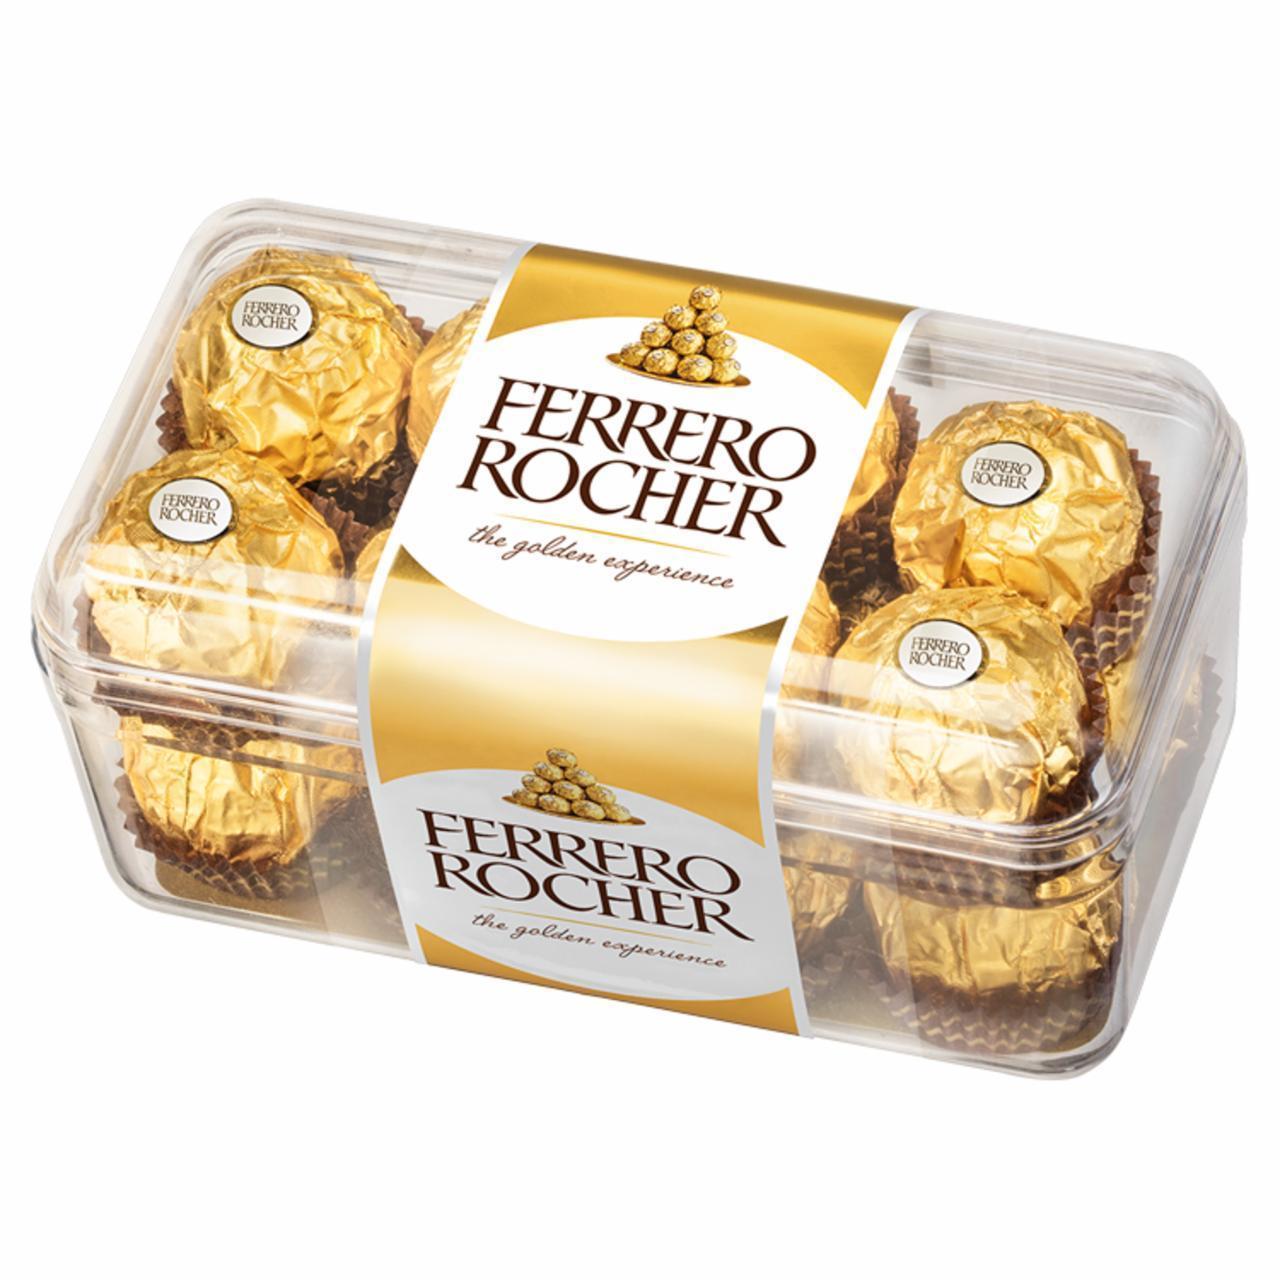 Zdjęcia - Ferrero Rocher (chrupiący wafelek z kremowym nadzieniem i orzechem laskowym w czekoladzie)